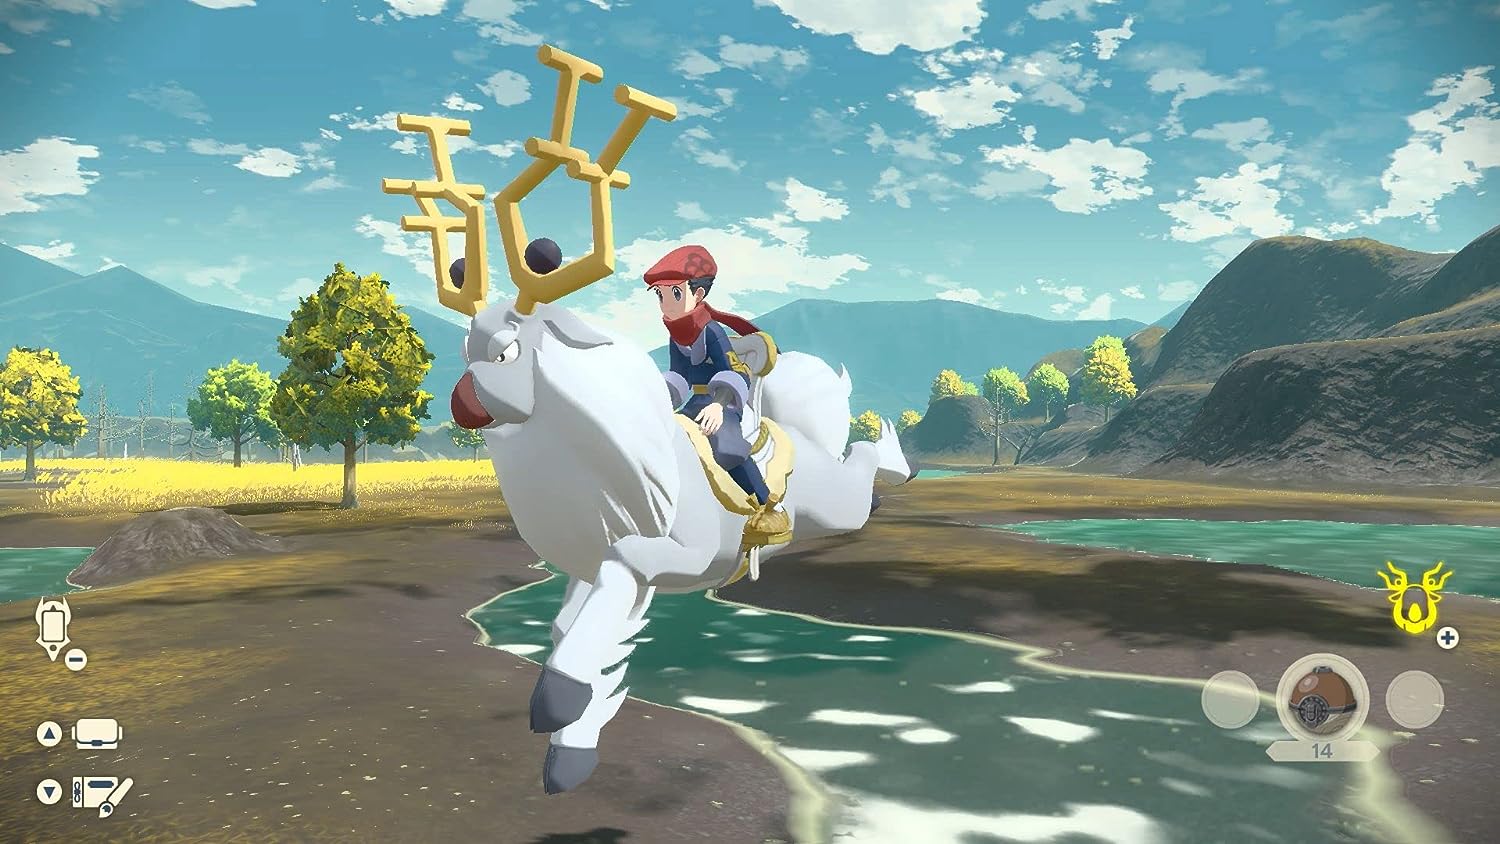 Leggende Pokémon: Arceus